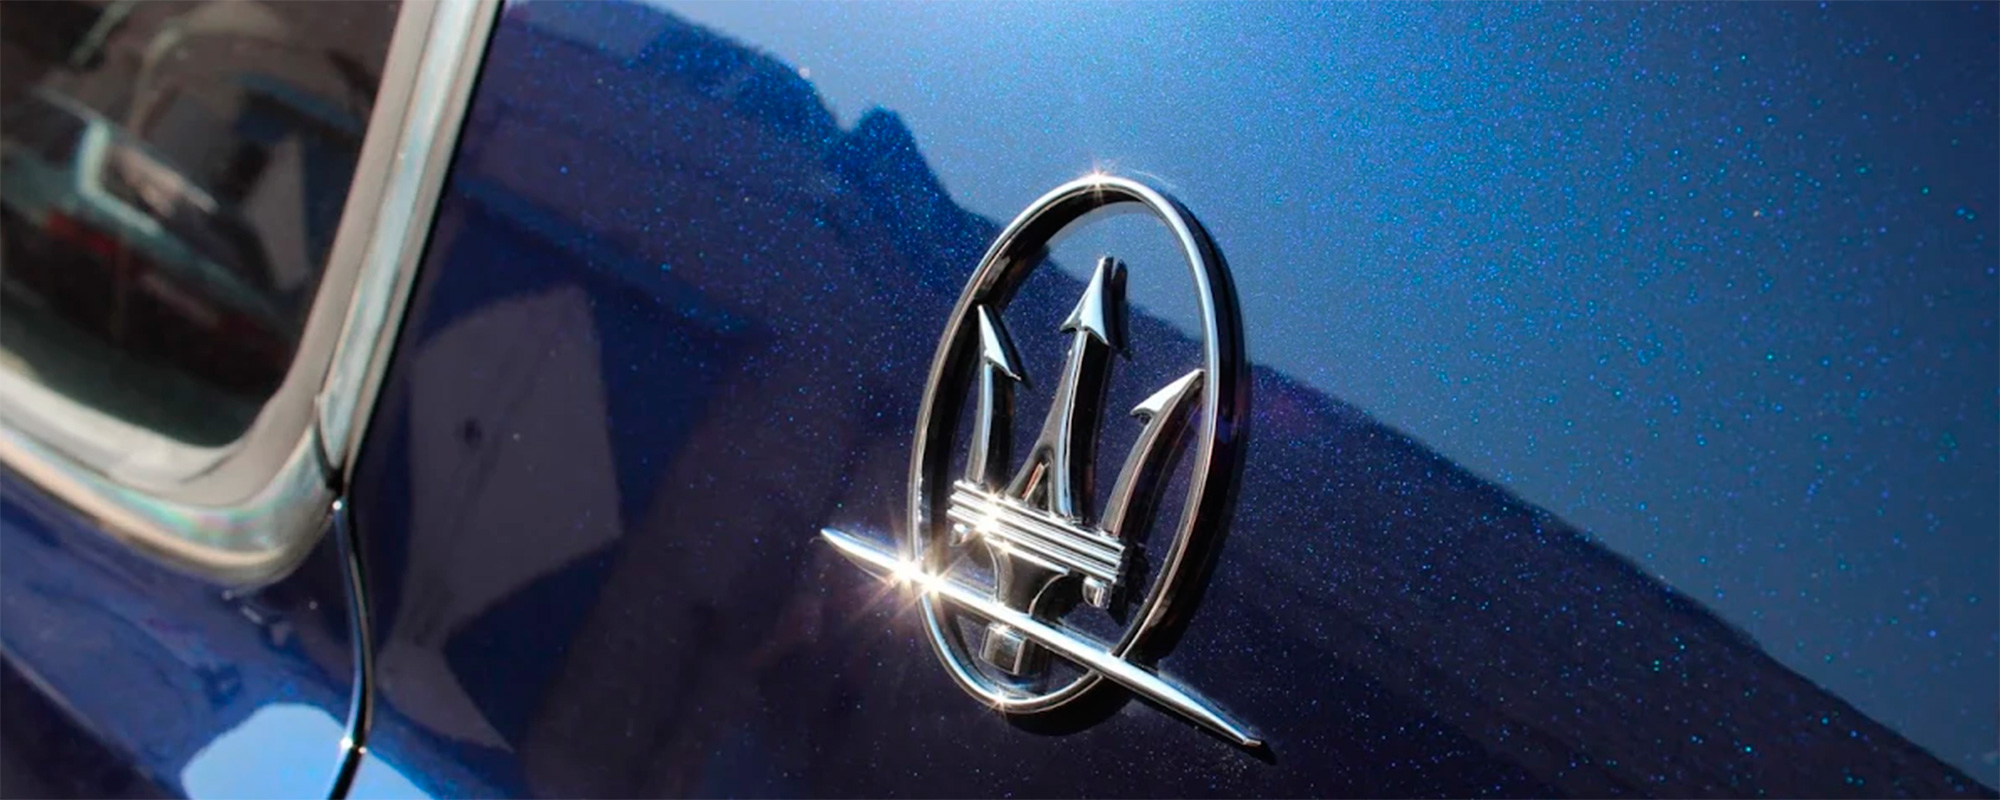 Maserati Quattroporte S. Восстановительная полировка, реставрация салона, установка защитной пленки, покраска дисков.﻿